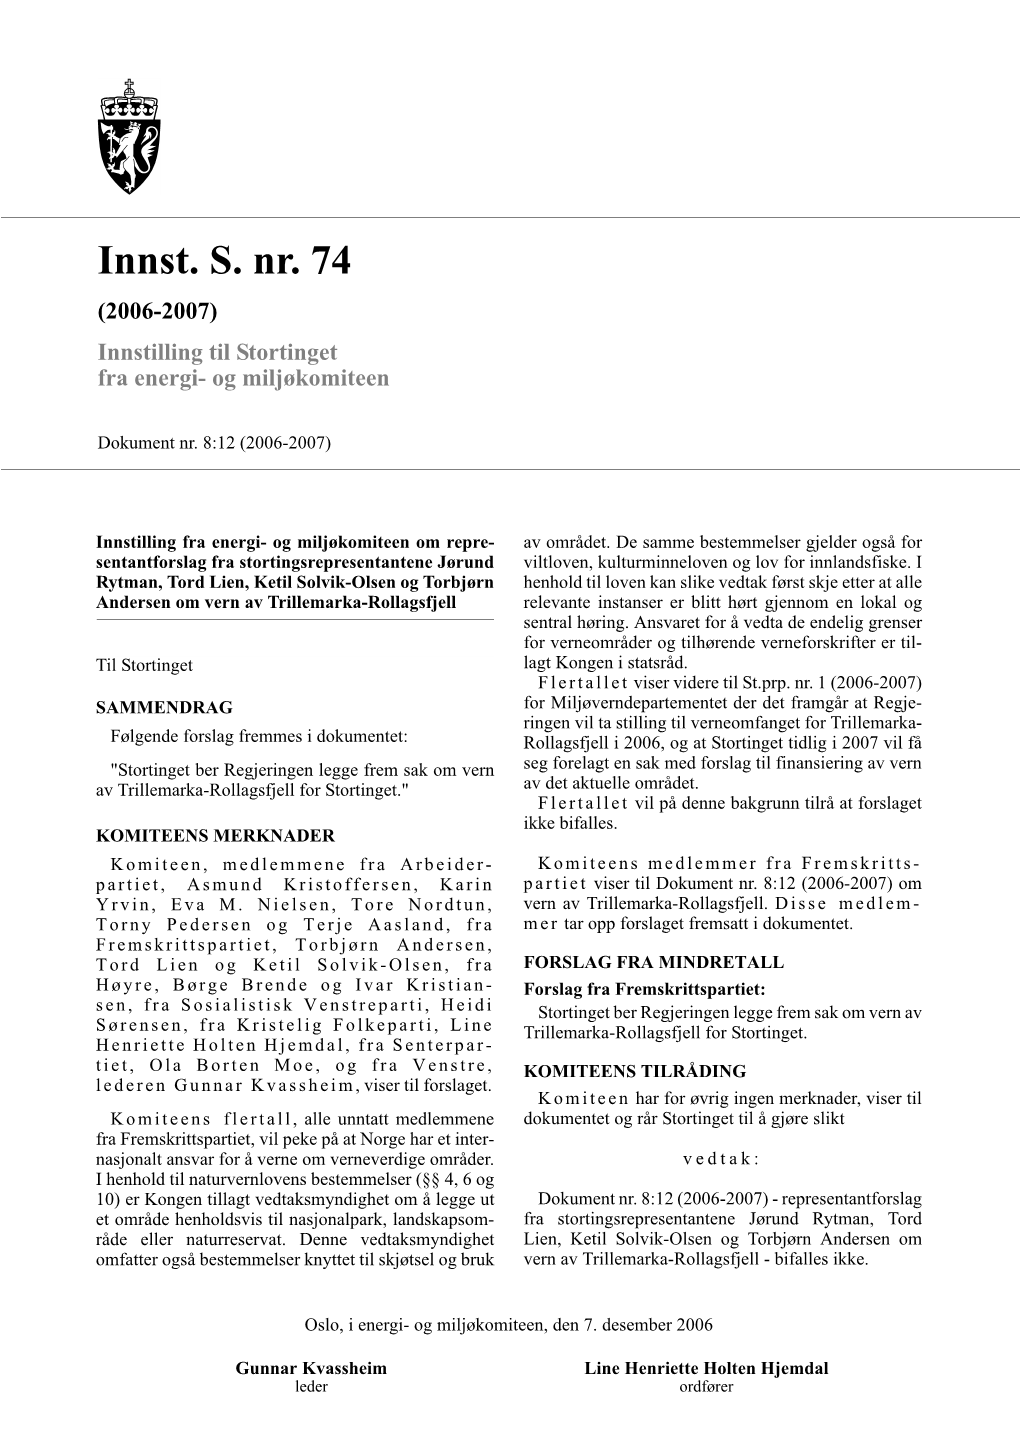 Innst. S. Nr. 74 (2006-2007) Innstilling Til Stortinget Fra Energi- Og Miljøkomiteen